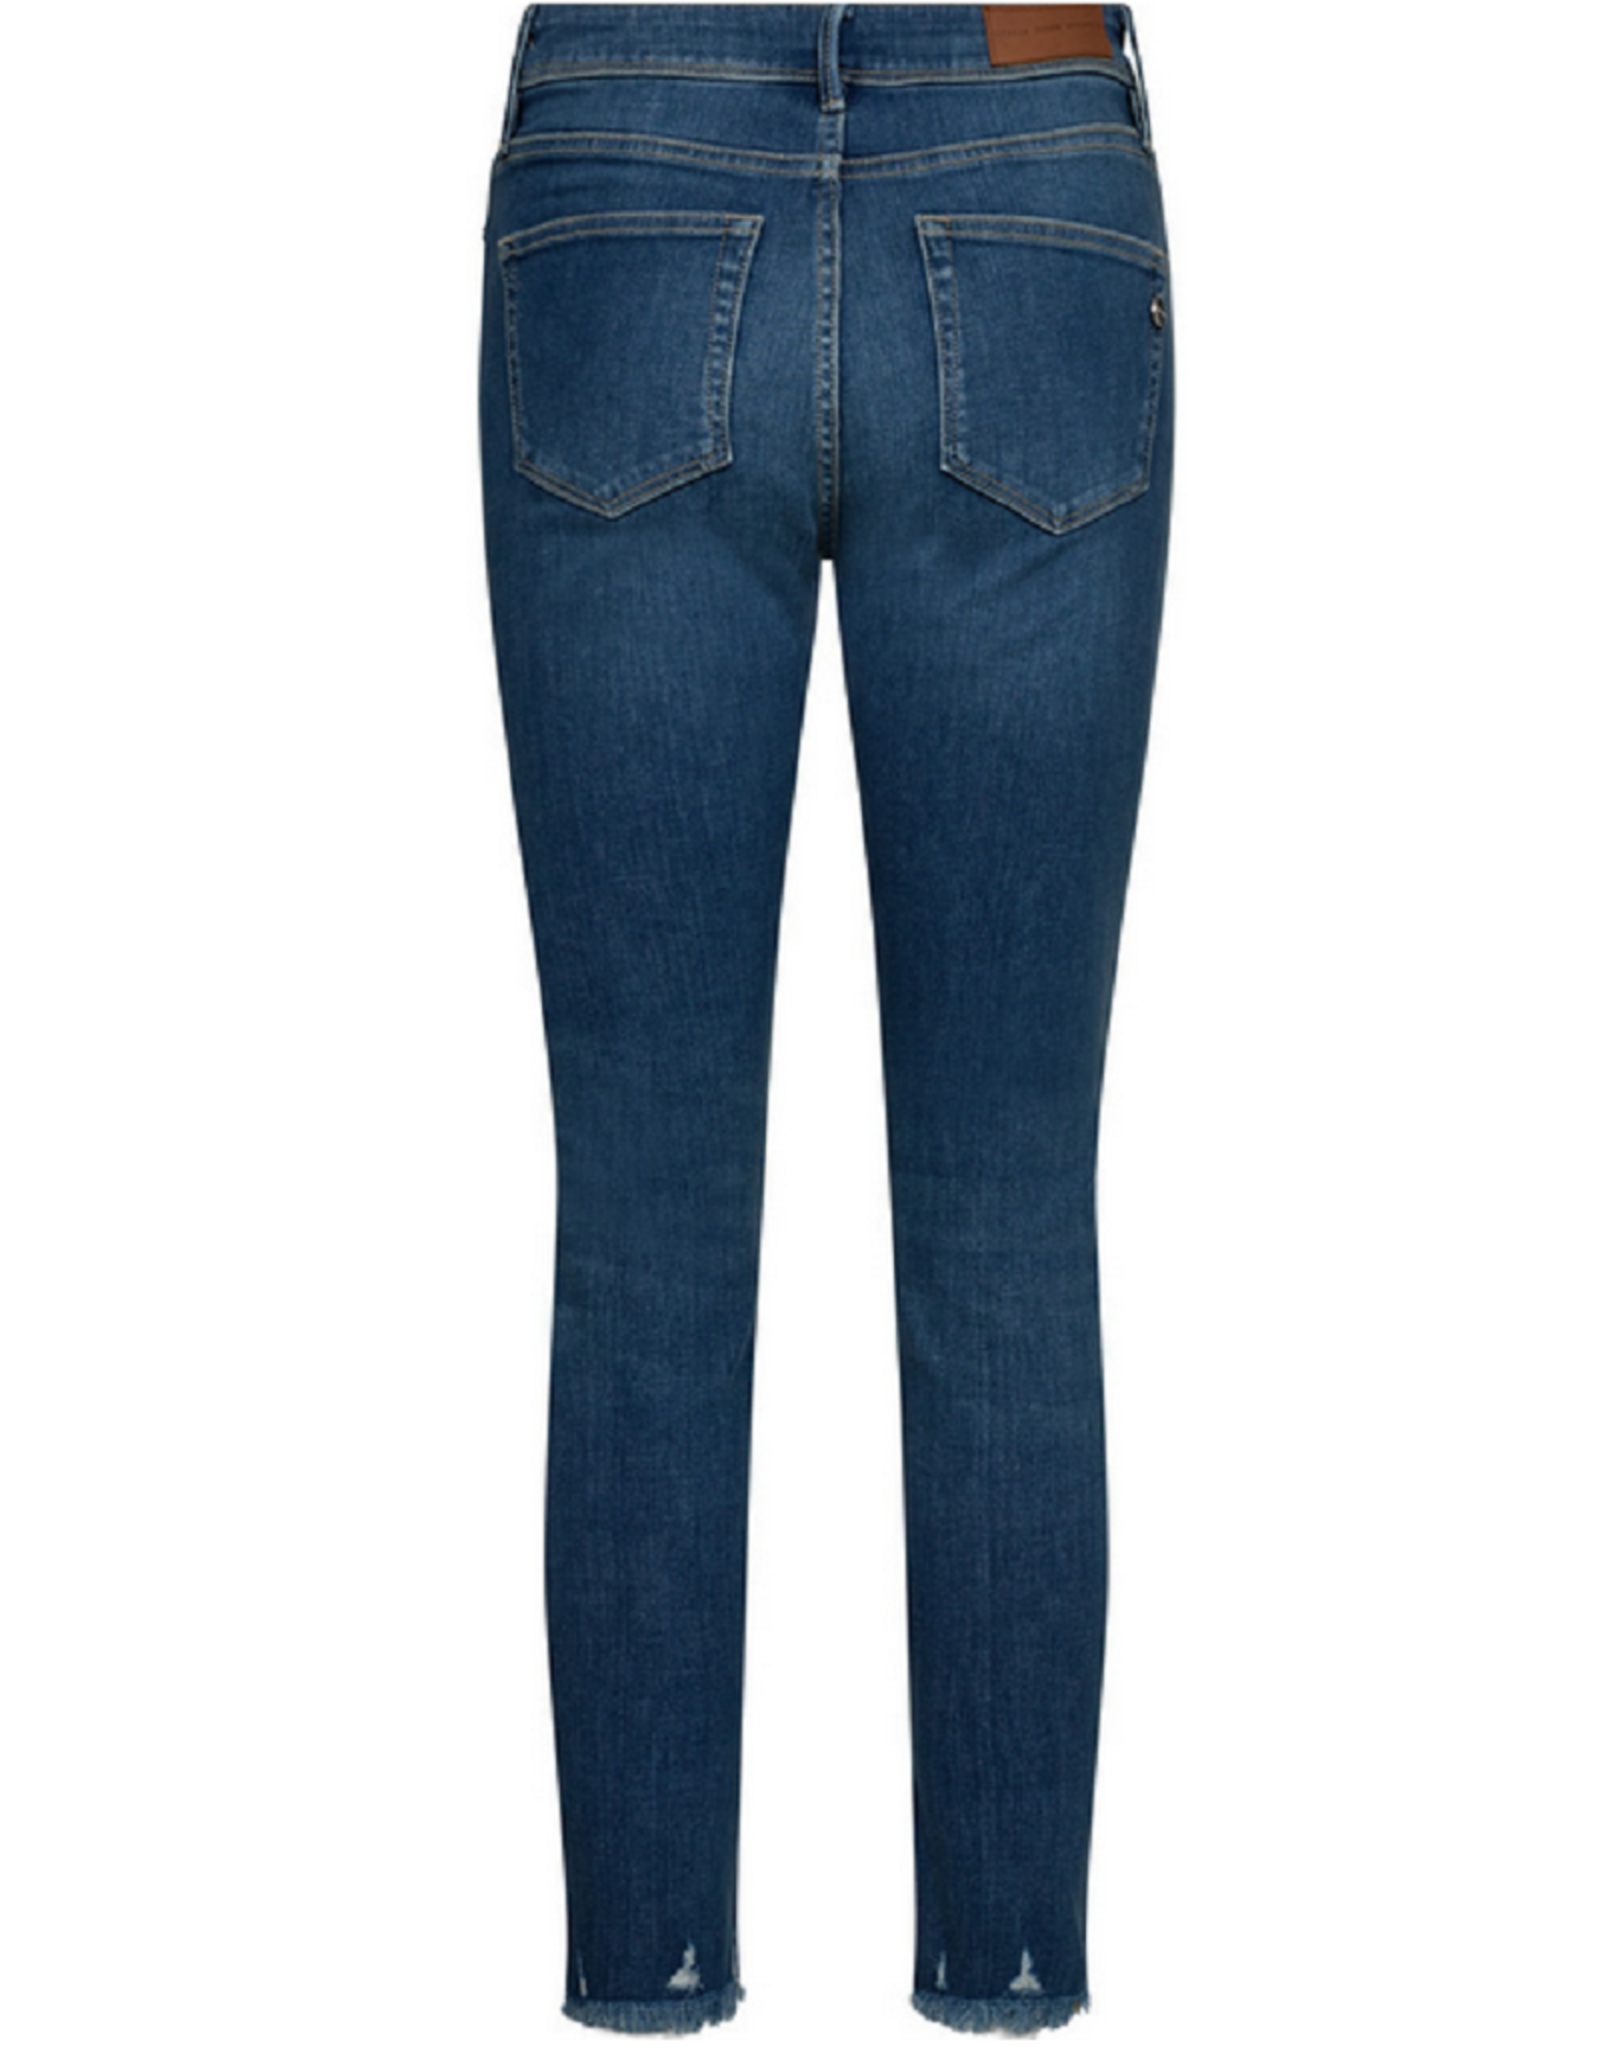 Pieszak Pieszak Poline jeans Lazio Denim blue